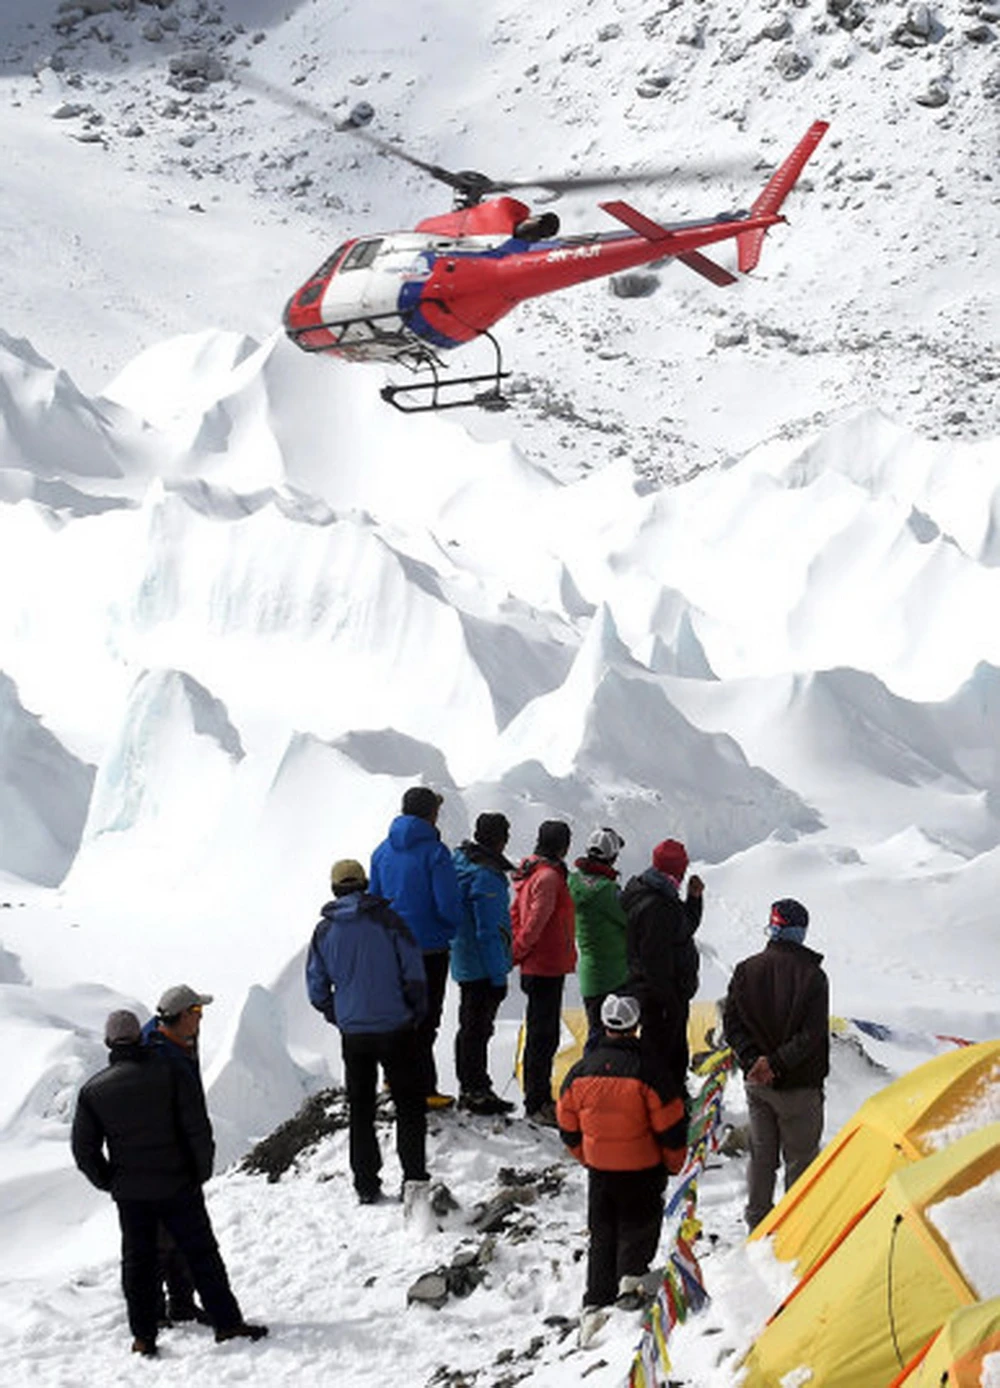 90.000+ ảnh đẹp nhất về Đỉnh Everest · Tải xuống miễn phí 100% · Ảnh có sẵn  của Pexels